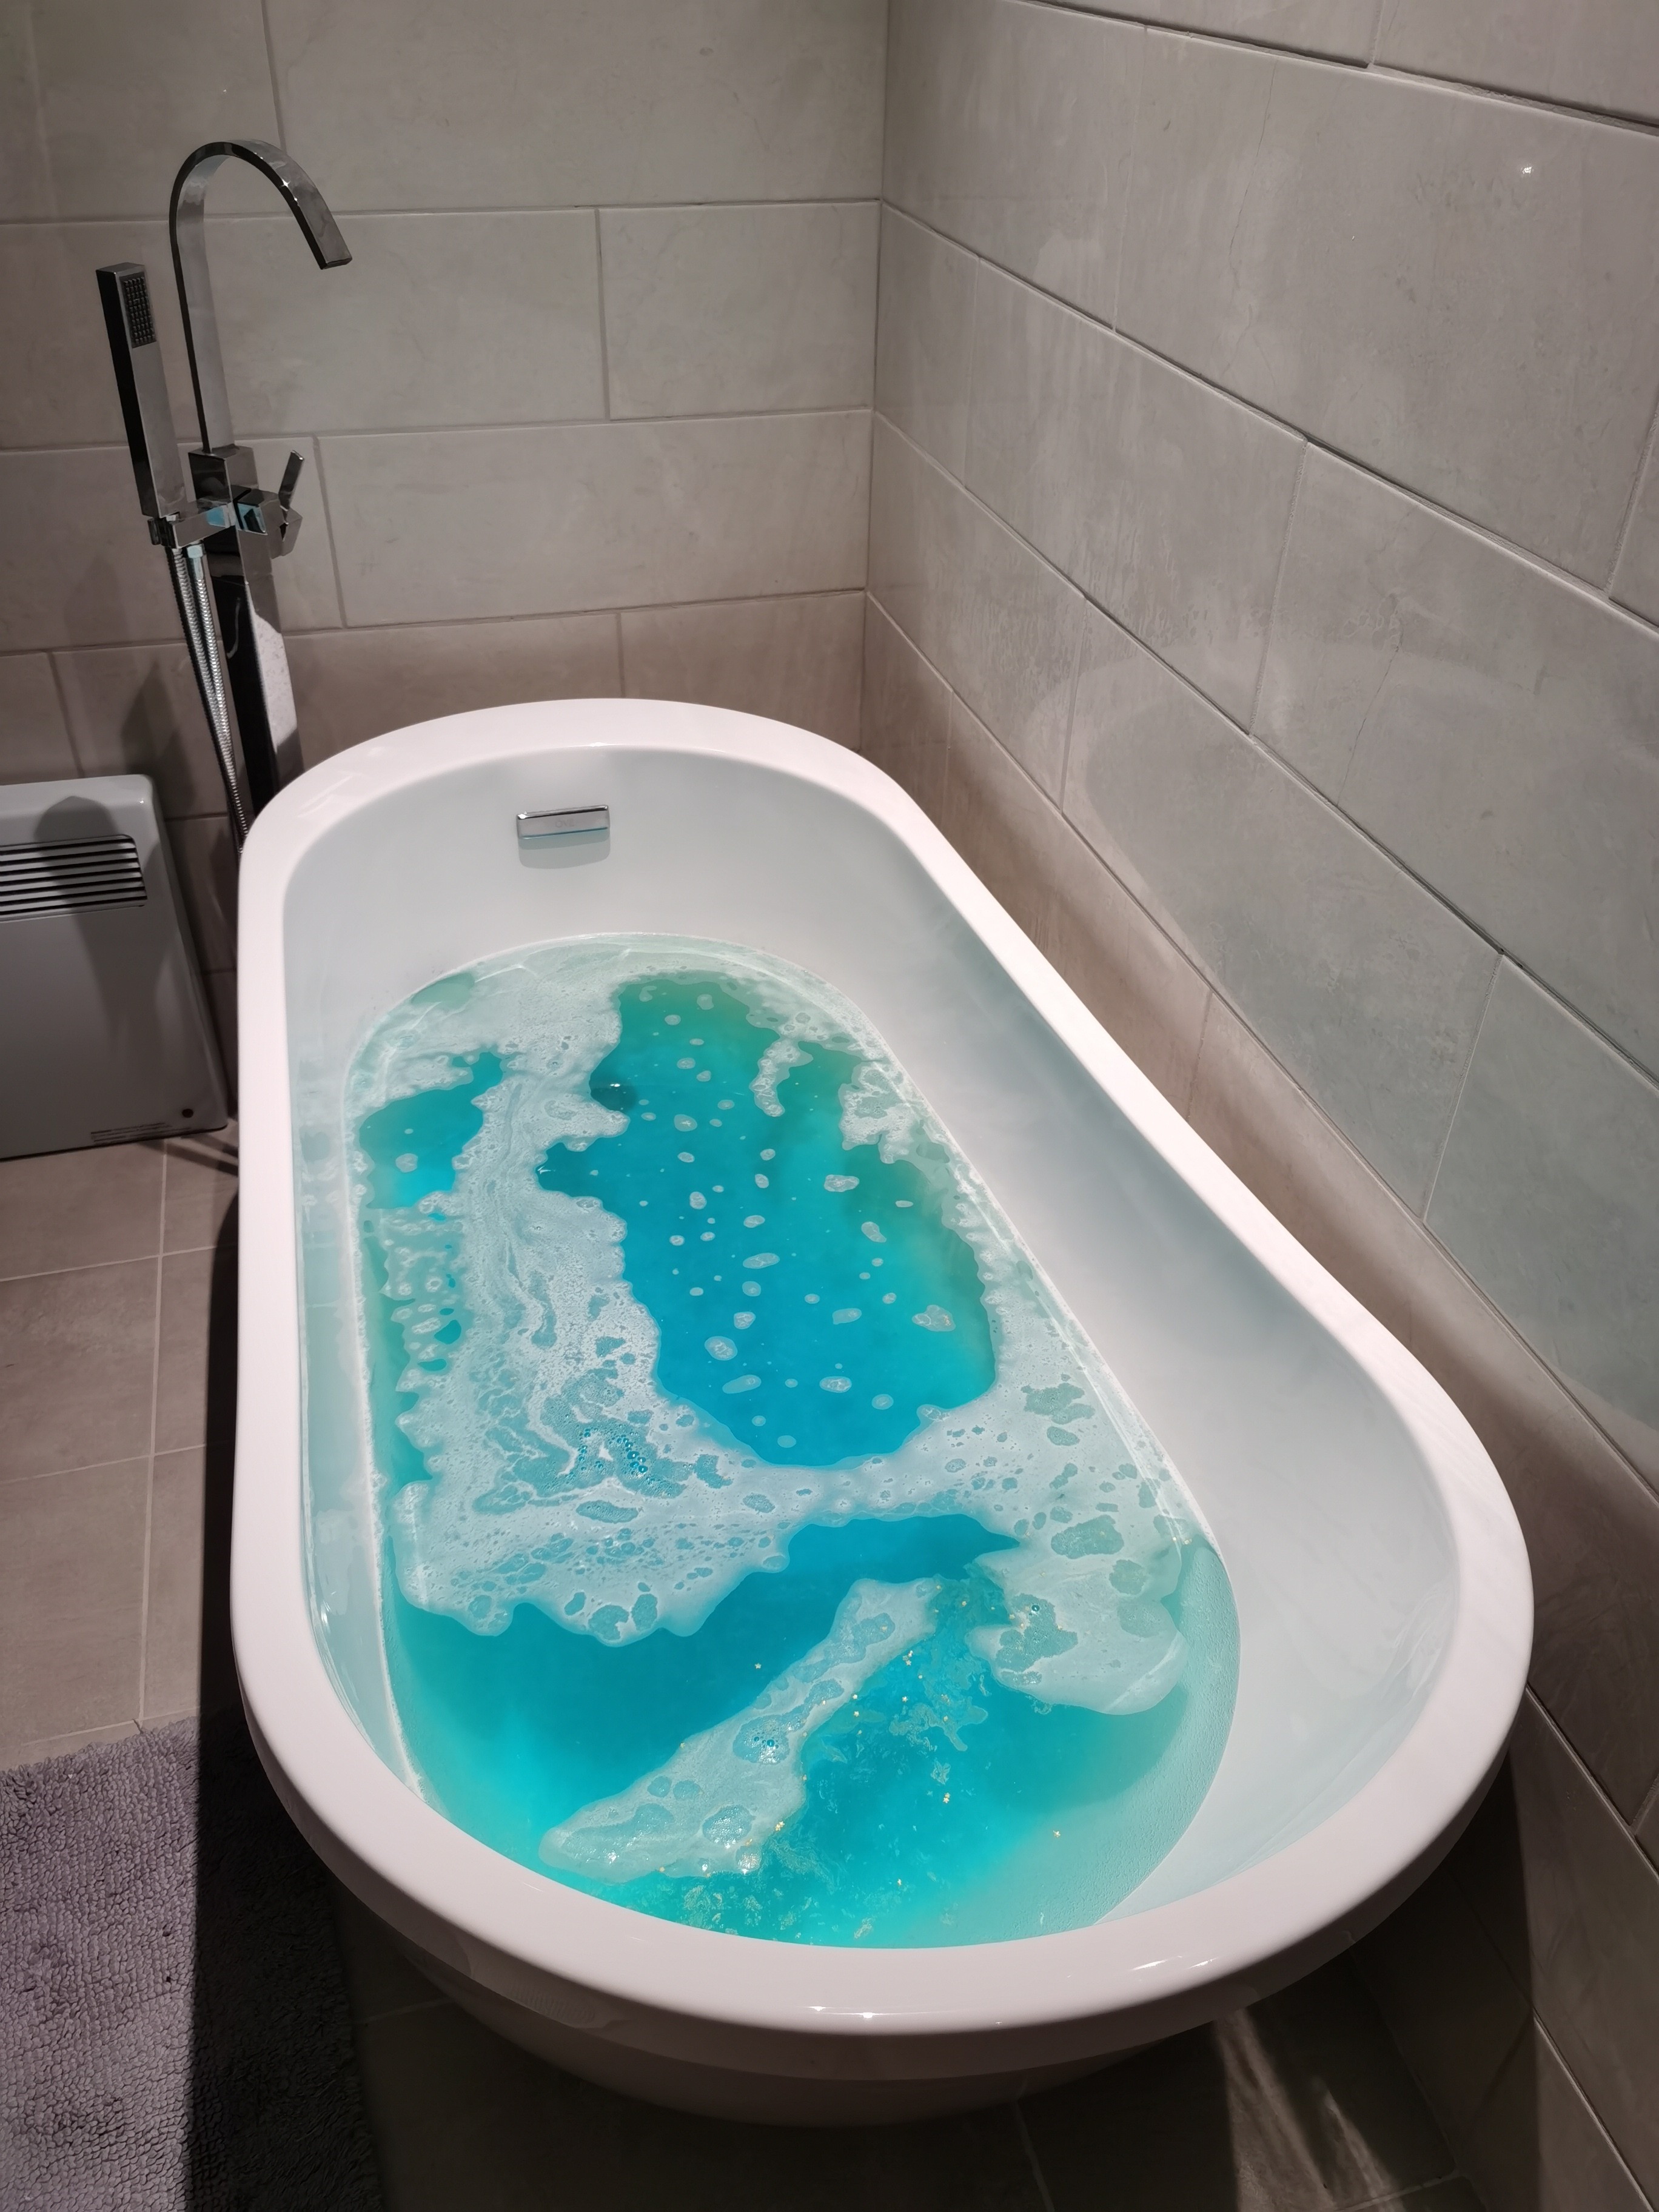 Golden Wonder Bath Bomb by Lush fully dissolved in a white bath tub